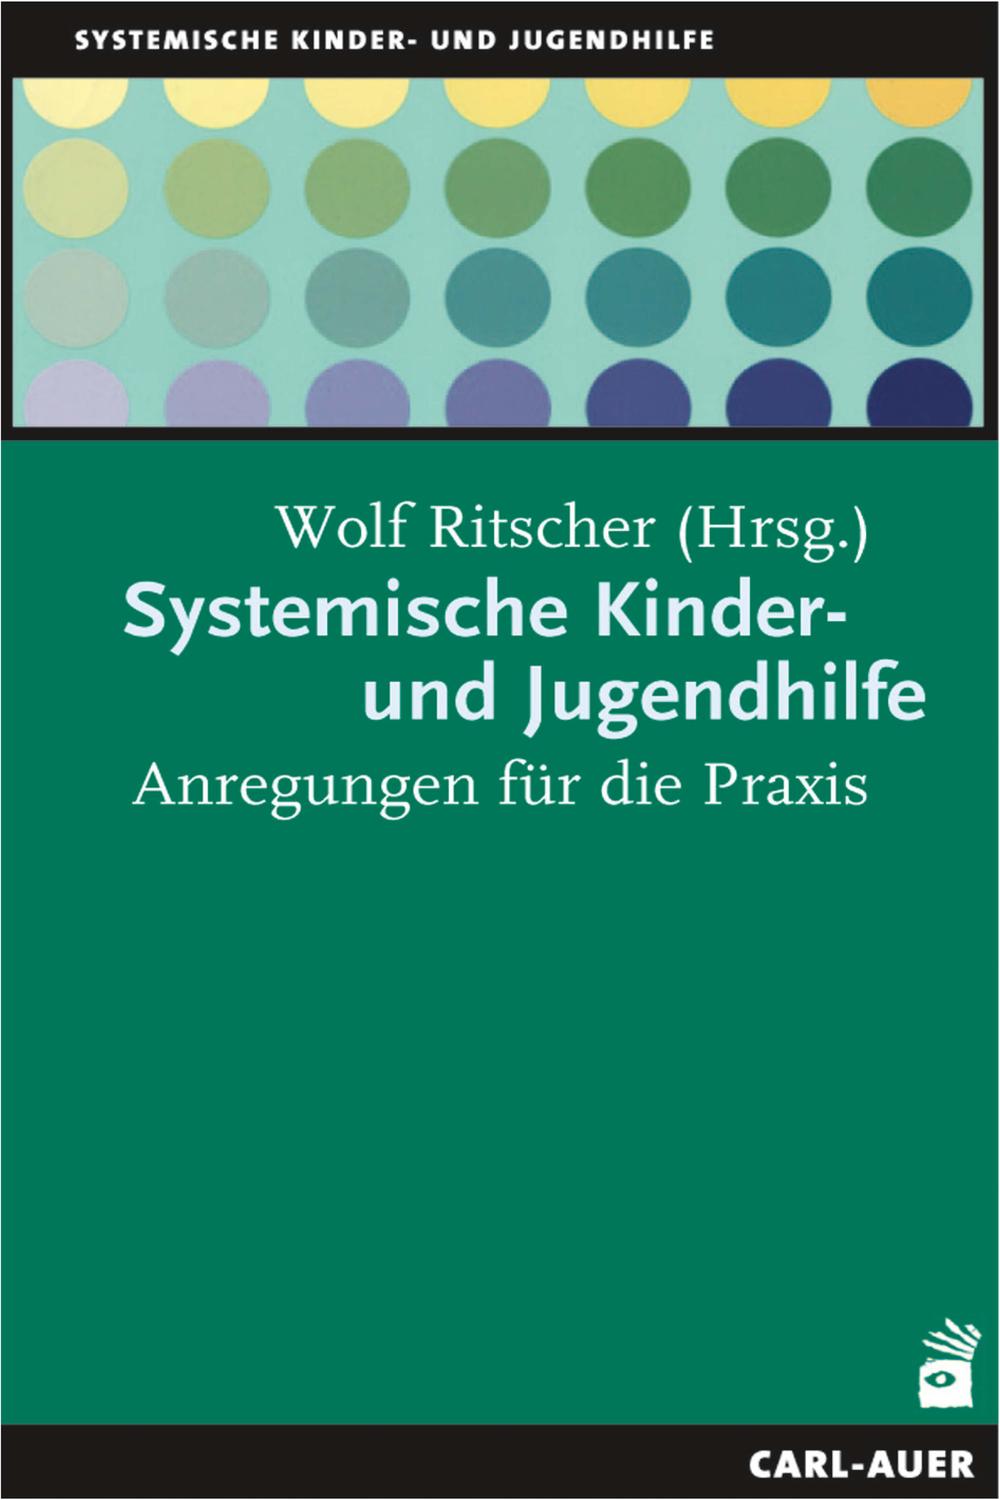 Systemische Kinder-und Jugendhilfe - Wolf Ritscher